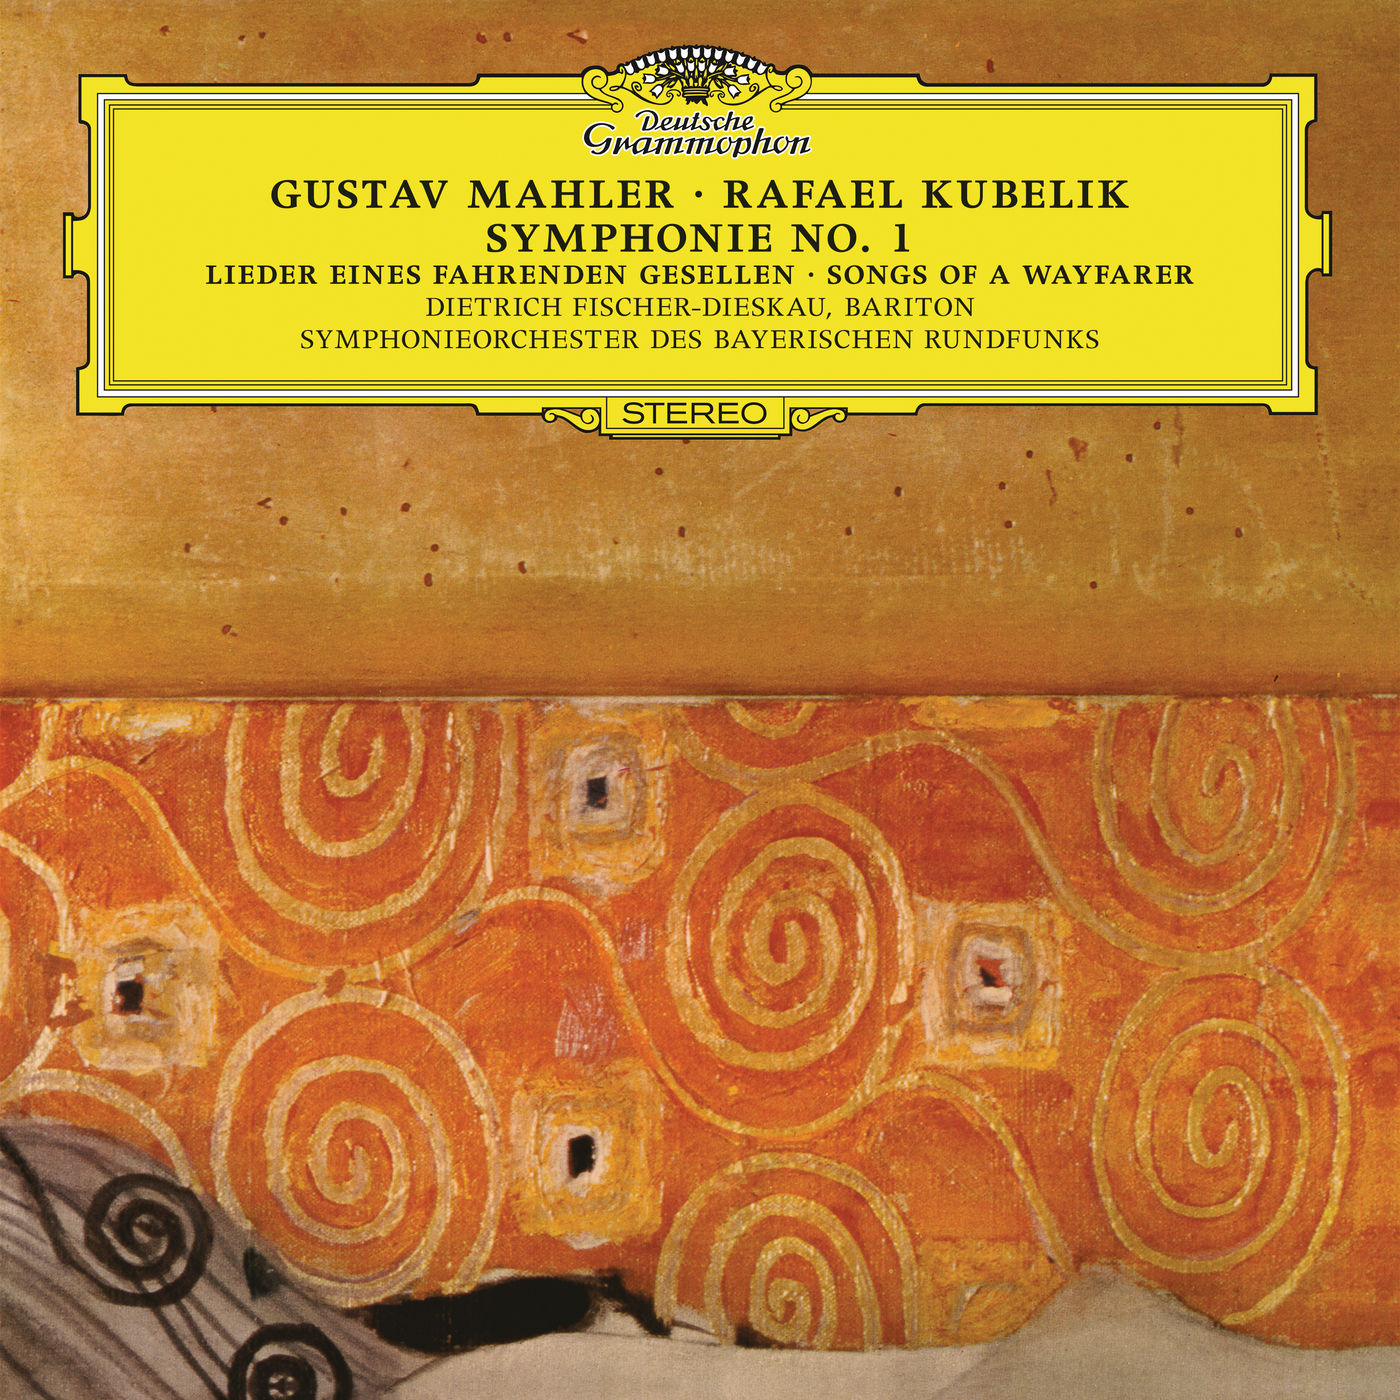 Dietrich Fischer-Dieskau - Mahler: Symphony No.1 In D Major; Lieder eines fahrenden Gesellen (1989/2017) [FLAC 24bit/96kHz]